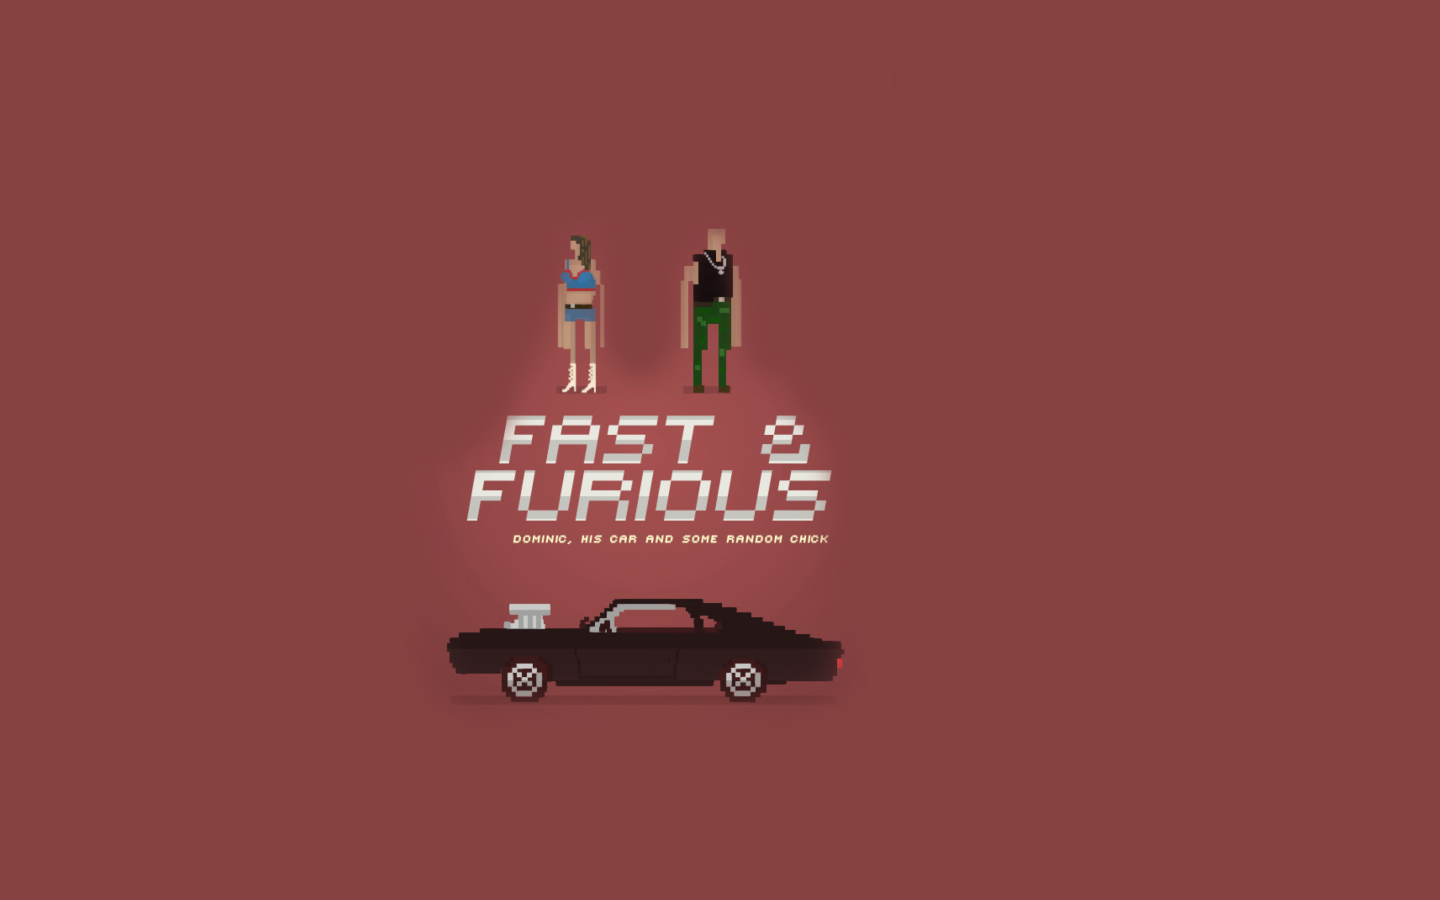 Sfondi Fast And Furious 1440x900